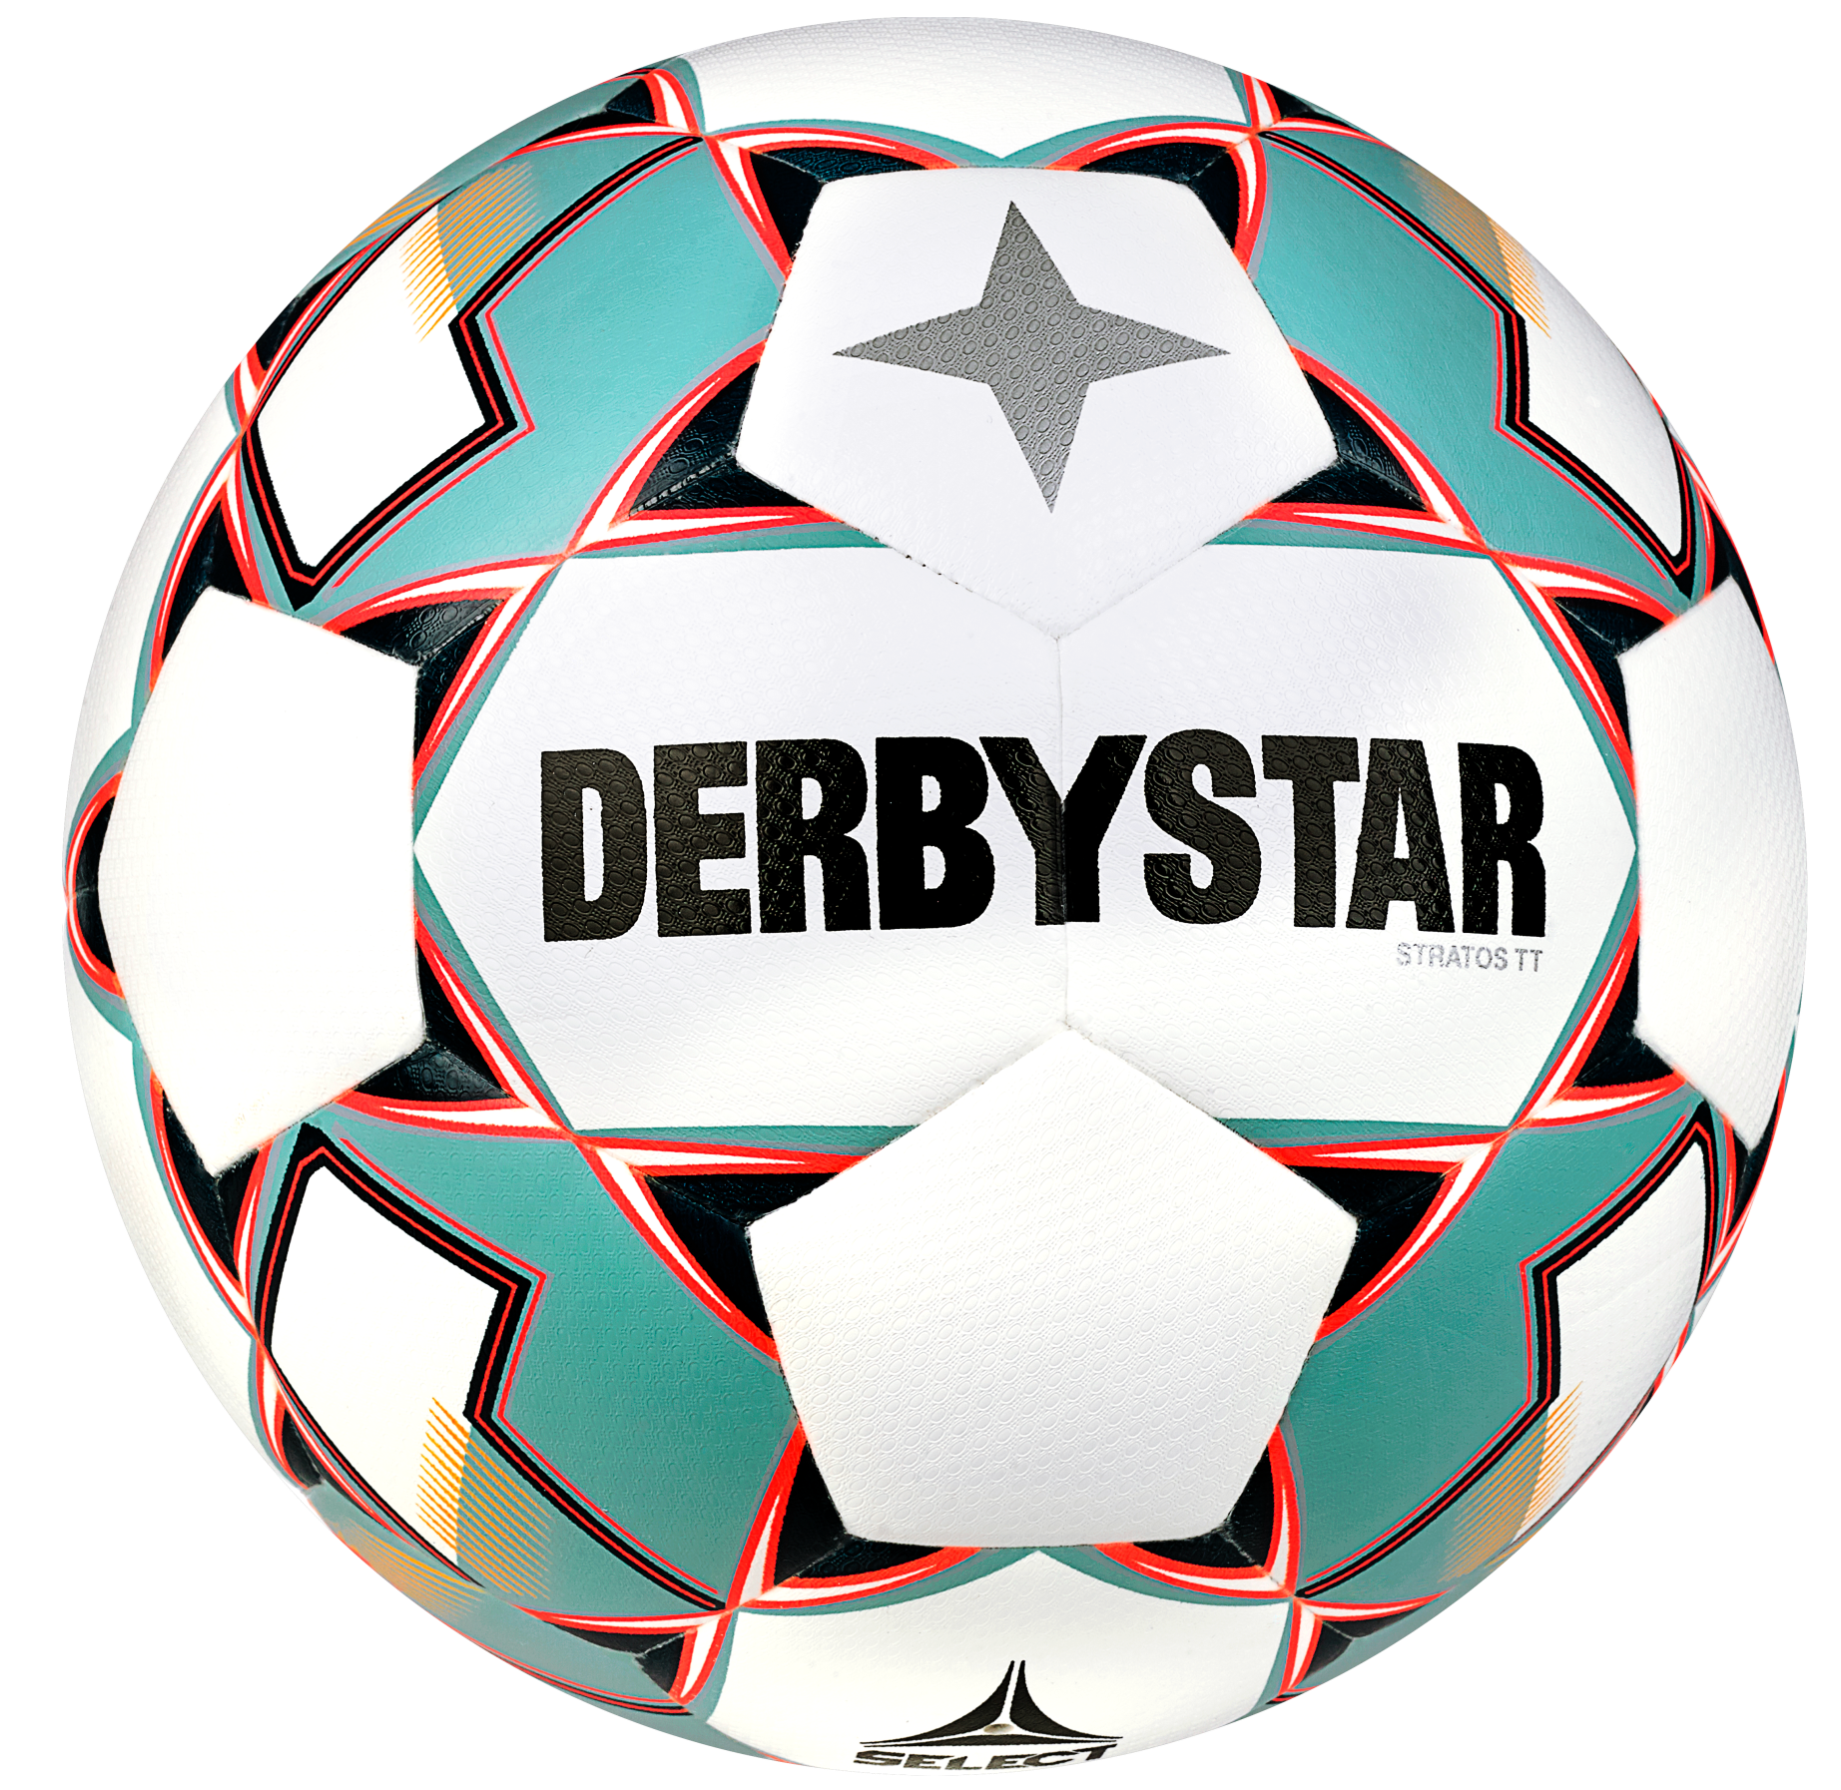 Tréninkový míč Derbystar Stratos TT v23